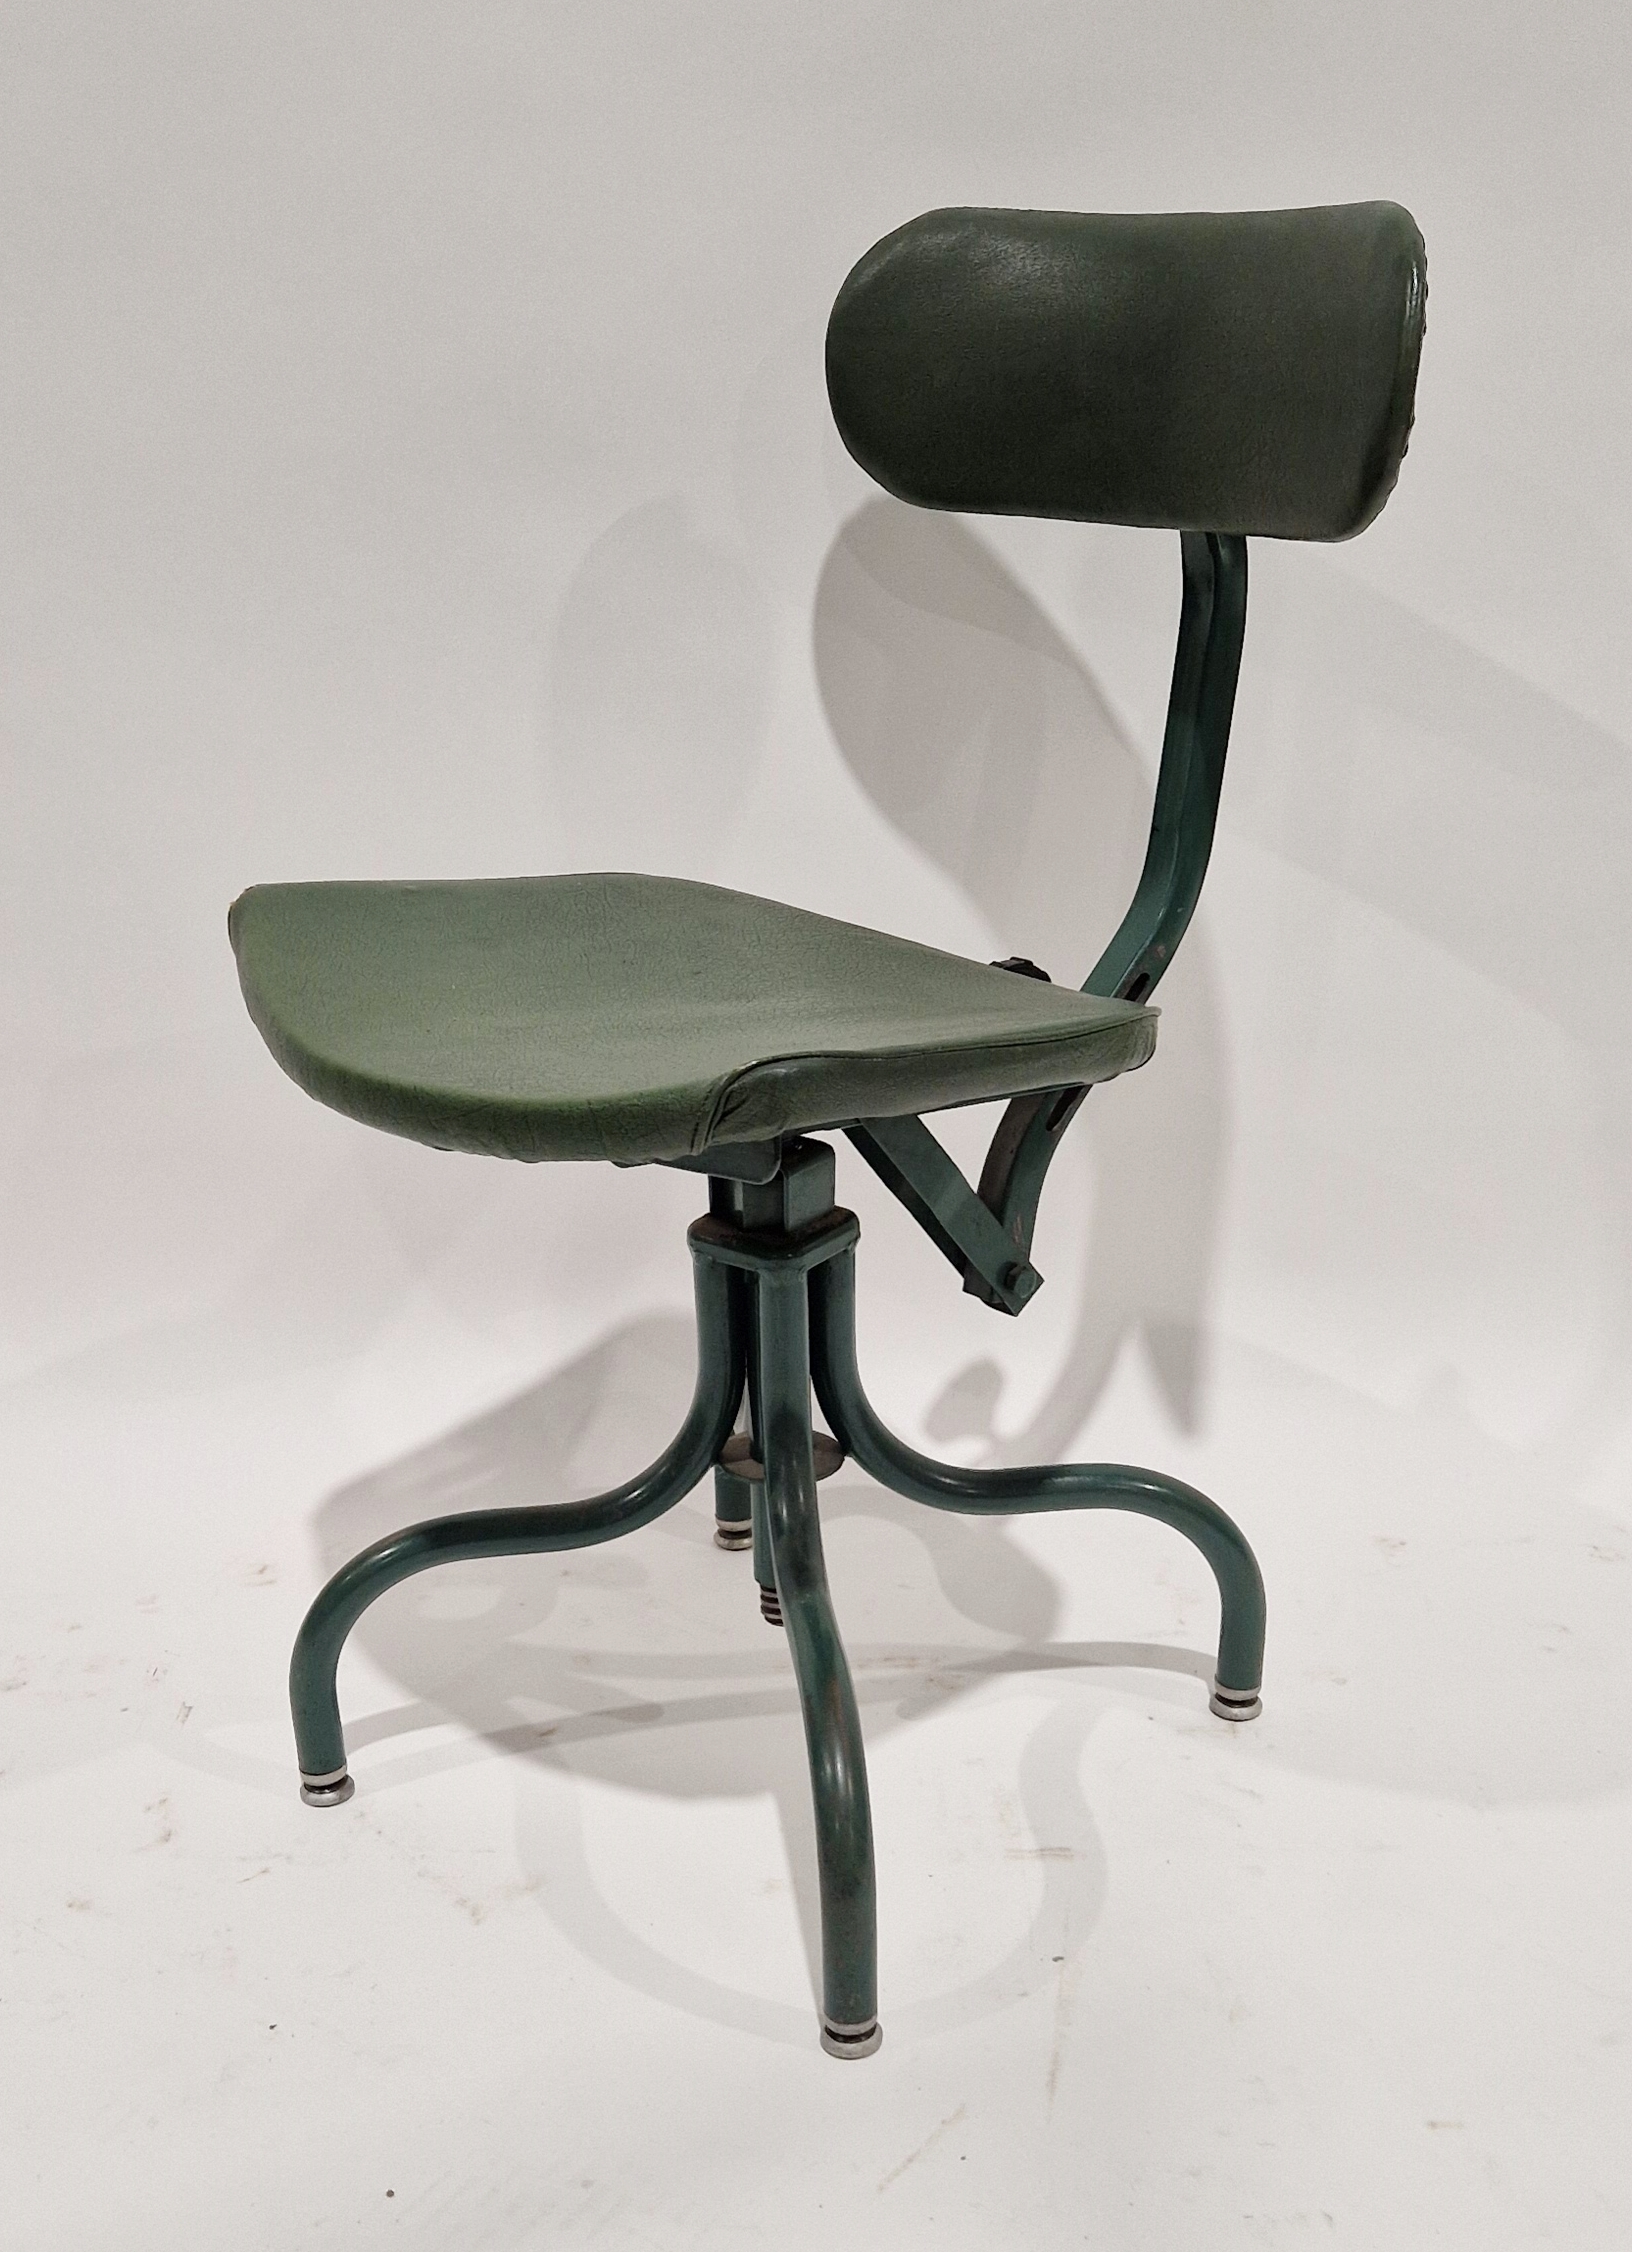 20th century industrialist bu-al machinist's swivel chair on four tubular metal legs, 75cm high